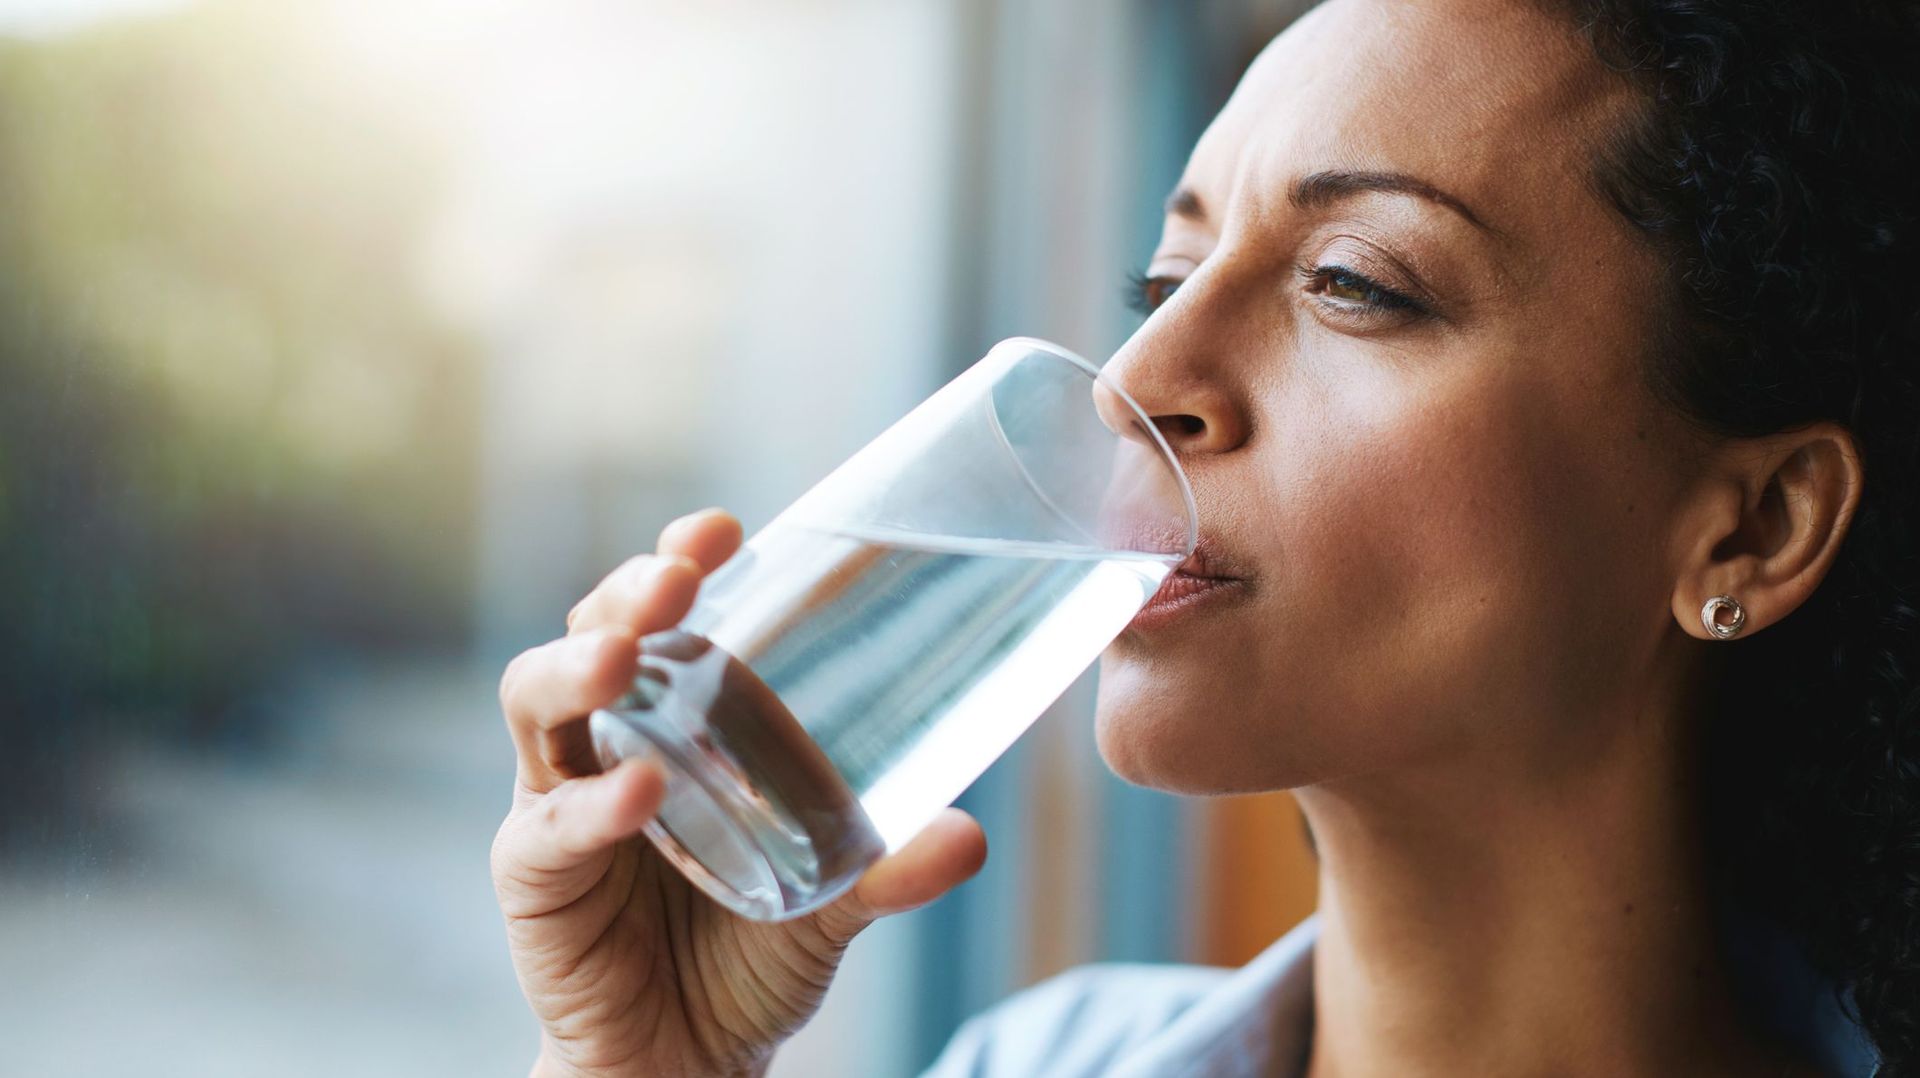 Eau minérale, eau du robinet, quelle boisson choisir pour un régime ? :  Femme Actuelle Le MAG